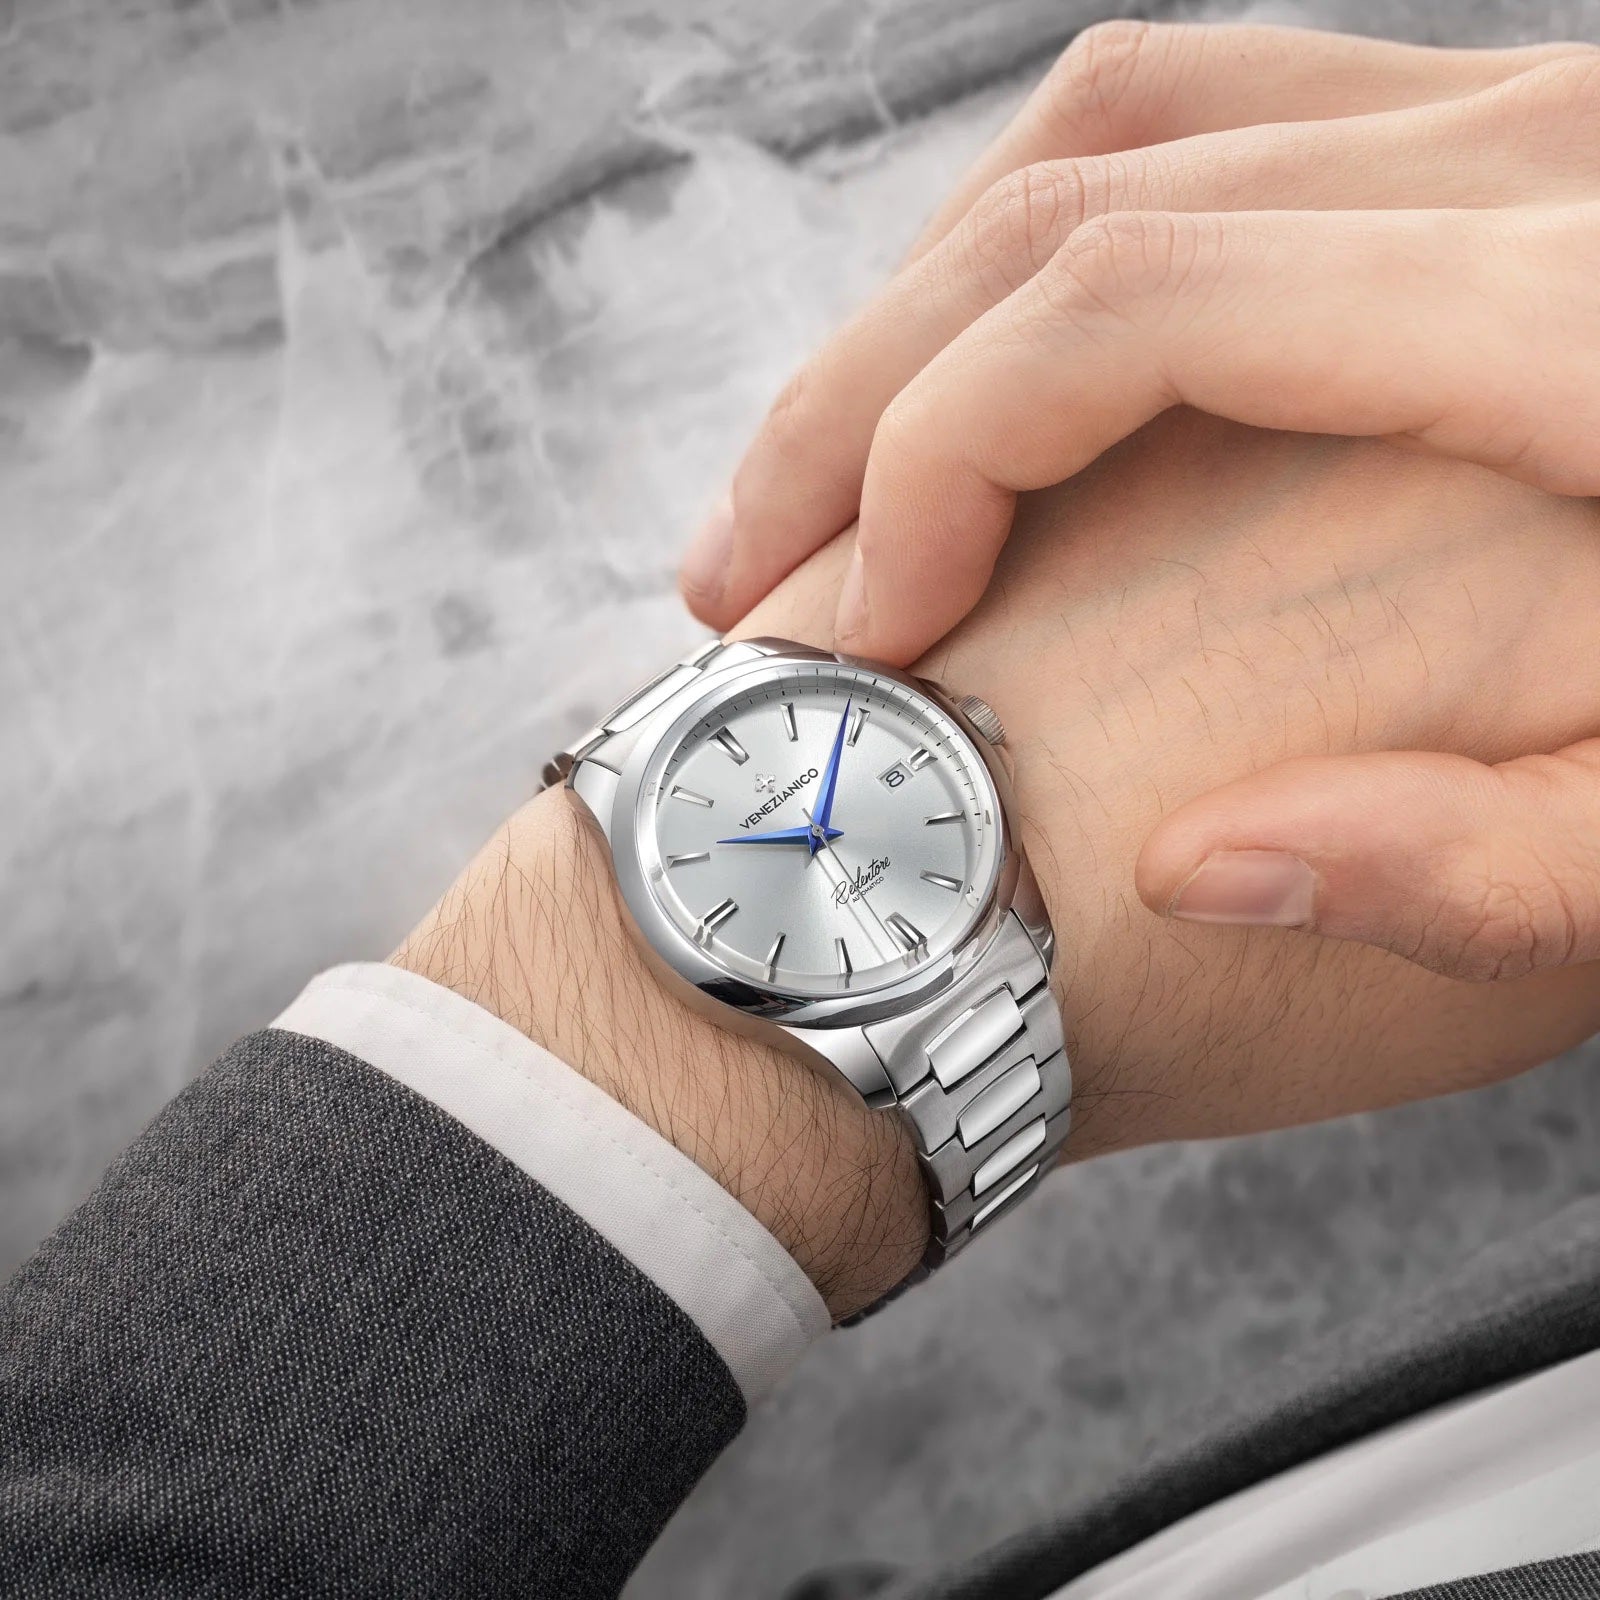 Titan has 60-65 per cent market share in wrist watch segment - The Economic  Times